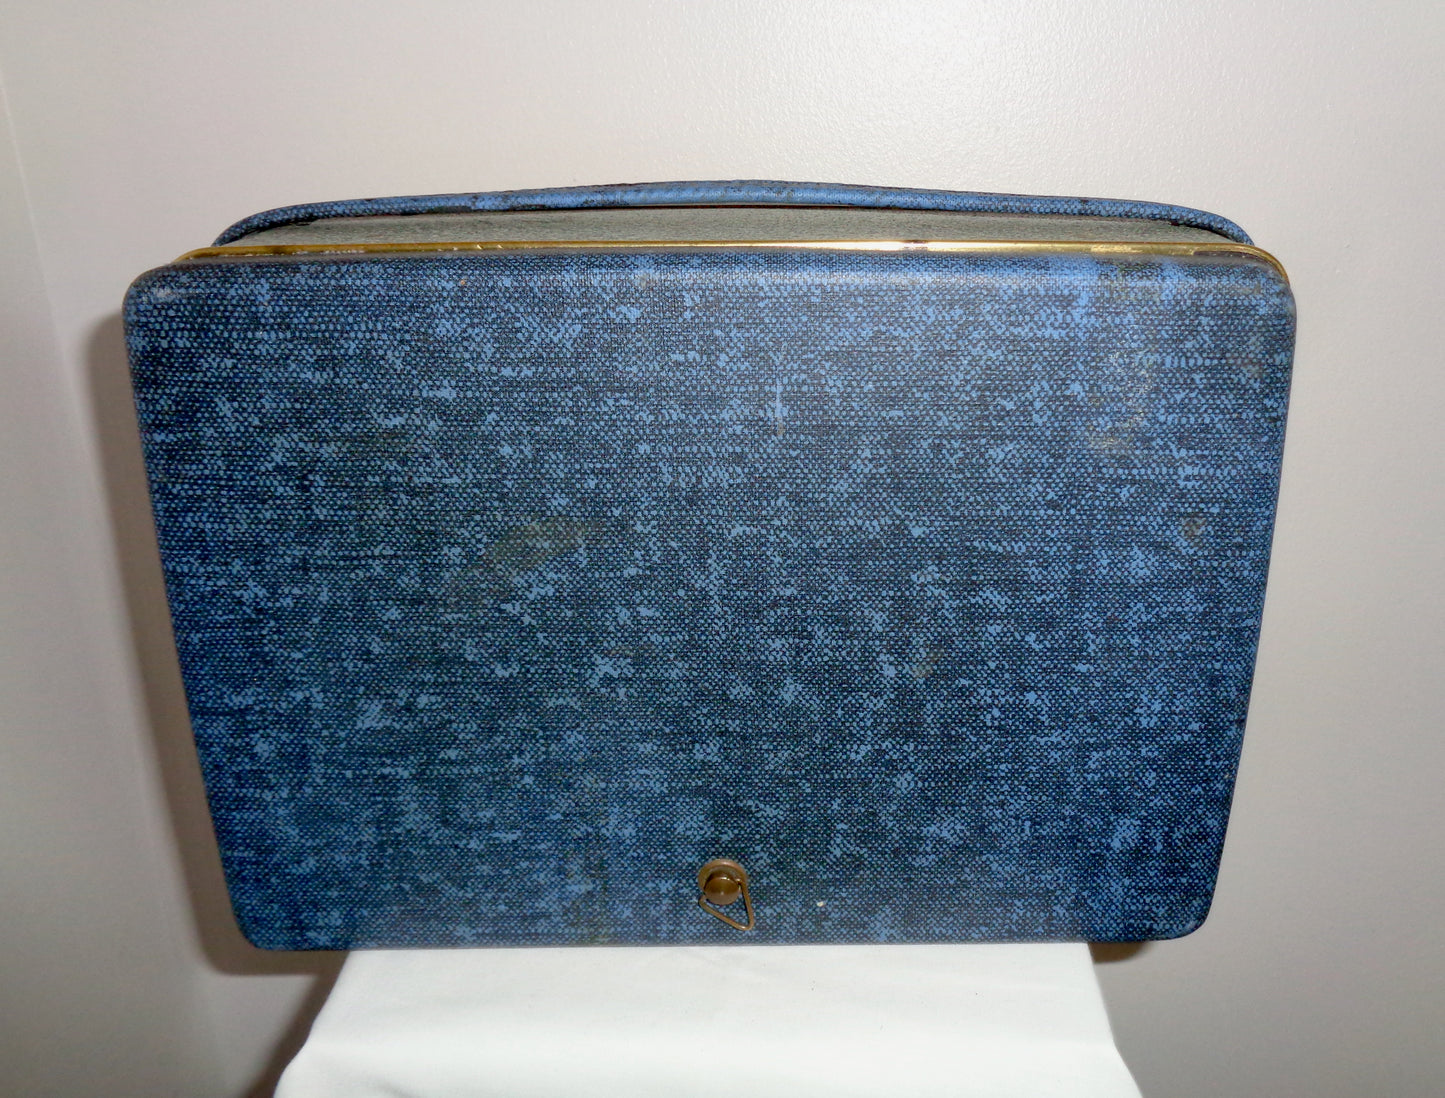 Dynatron Gypsy TP16 Vintage Portable Transistor Radio